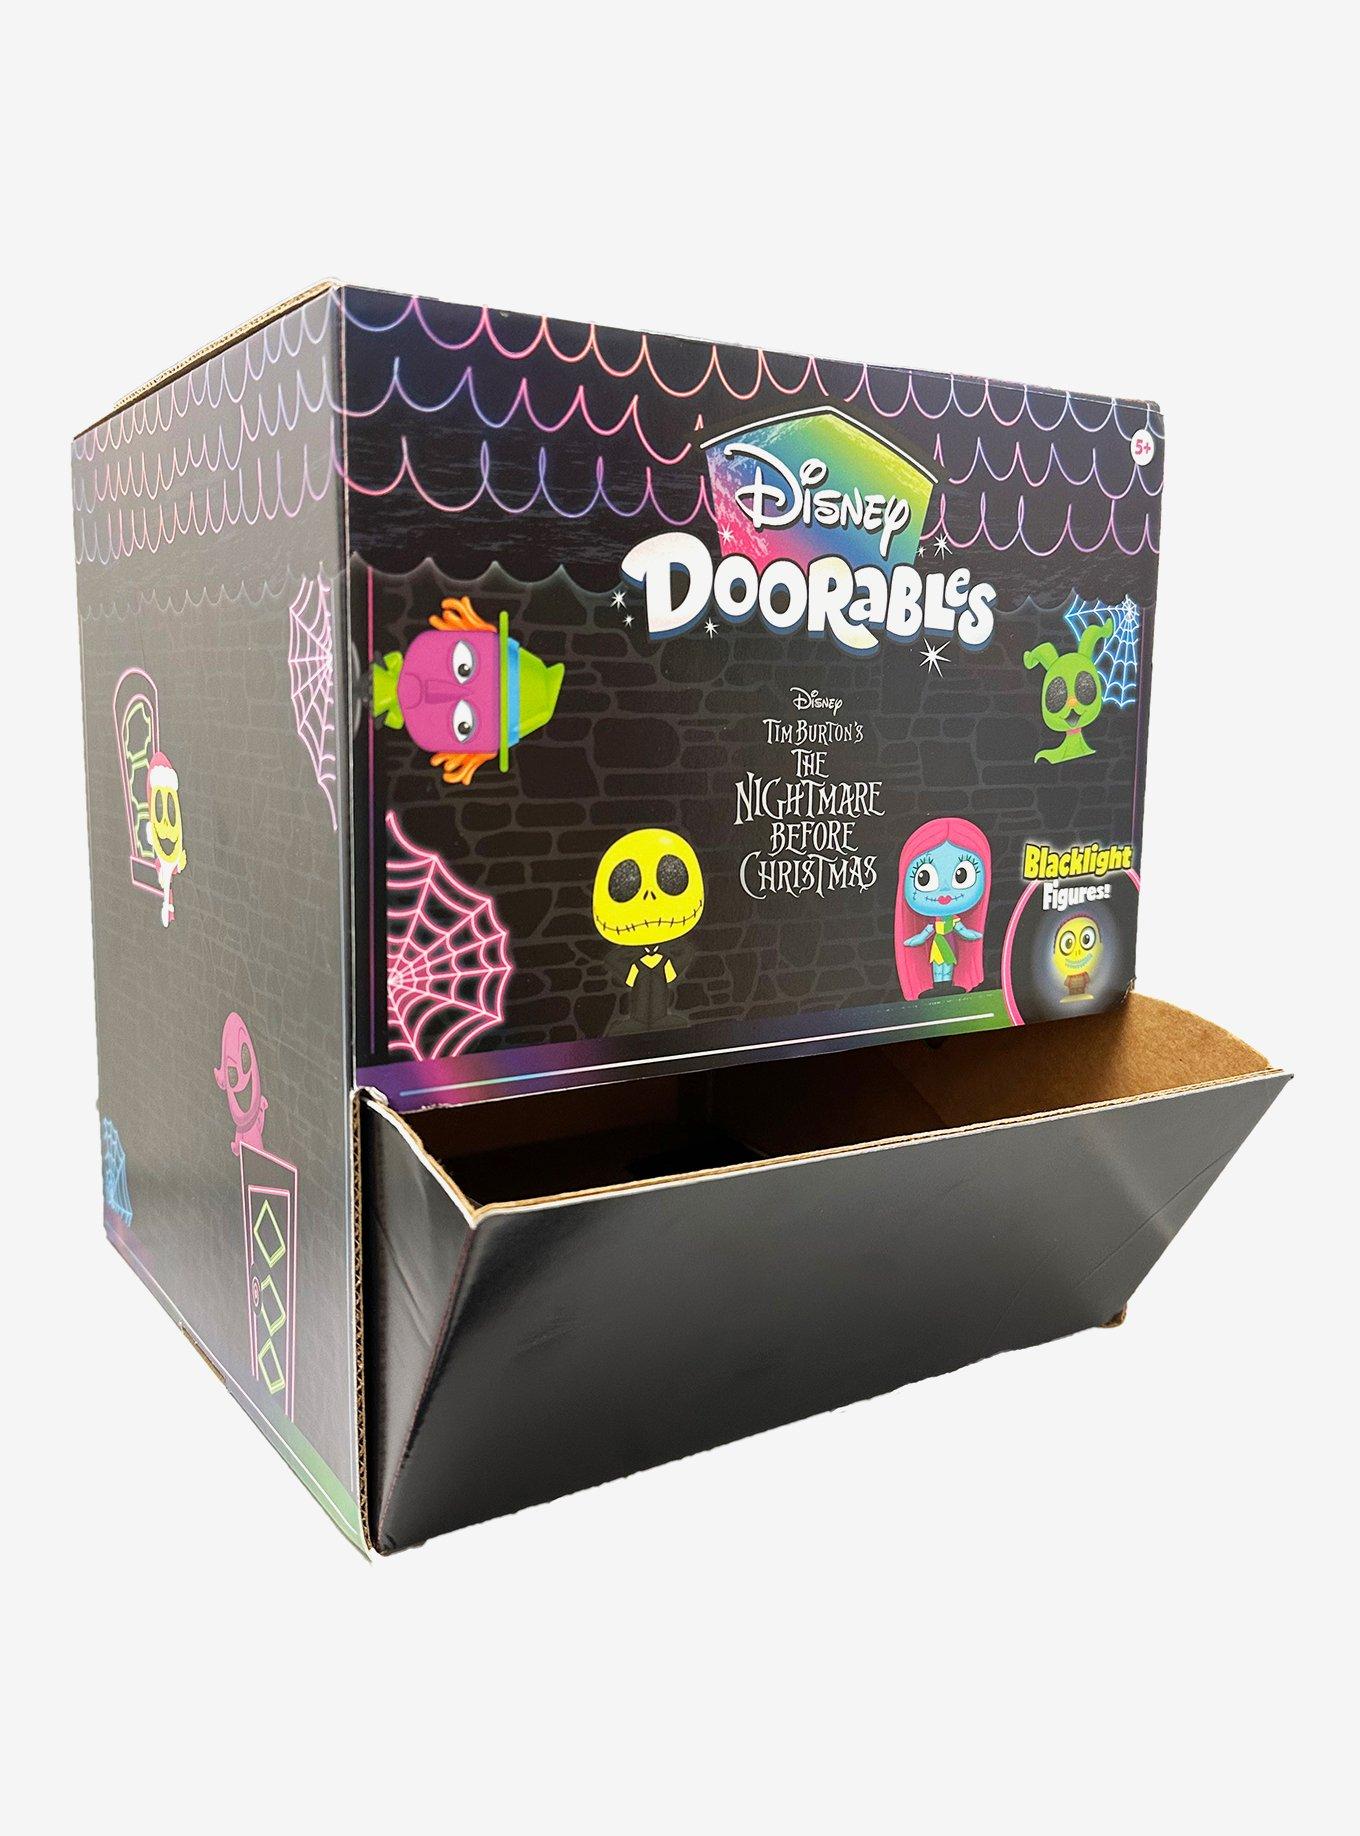 Doorables For Sale! : r/DisneyDoorables